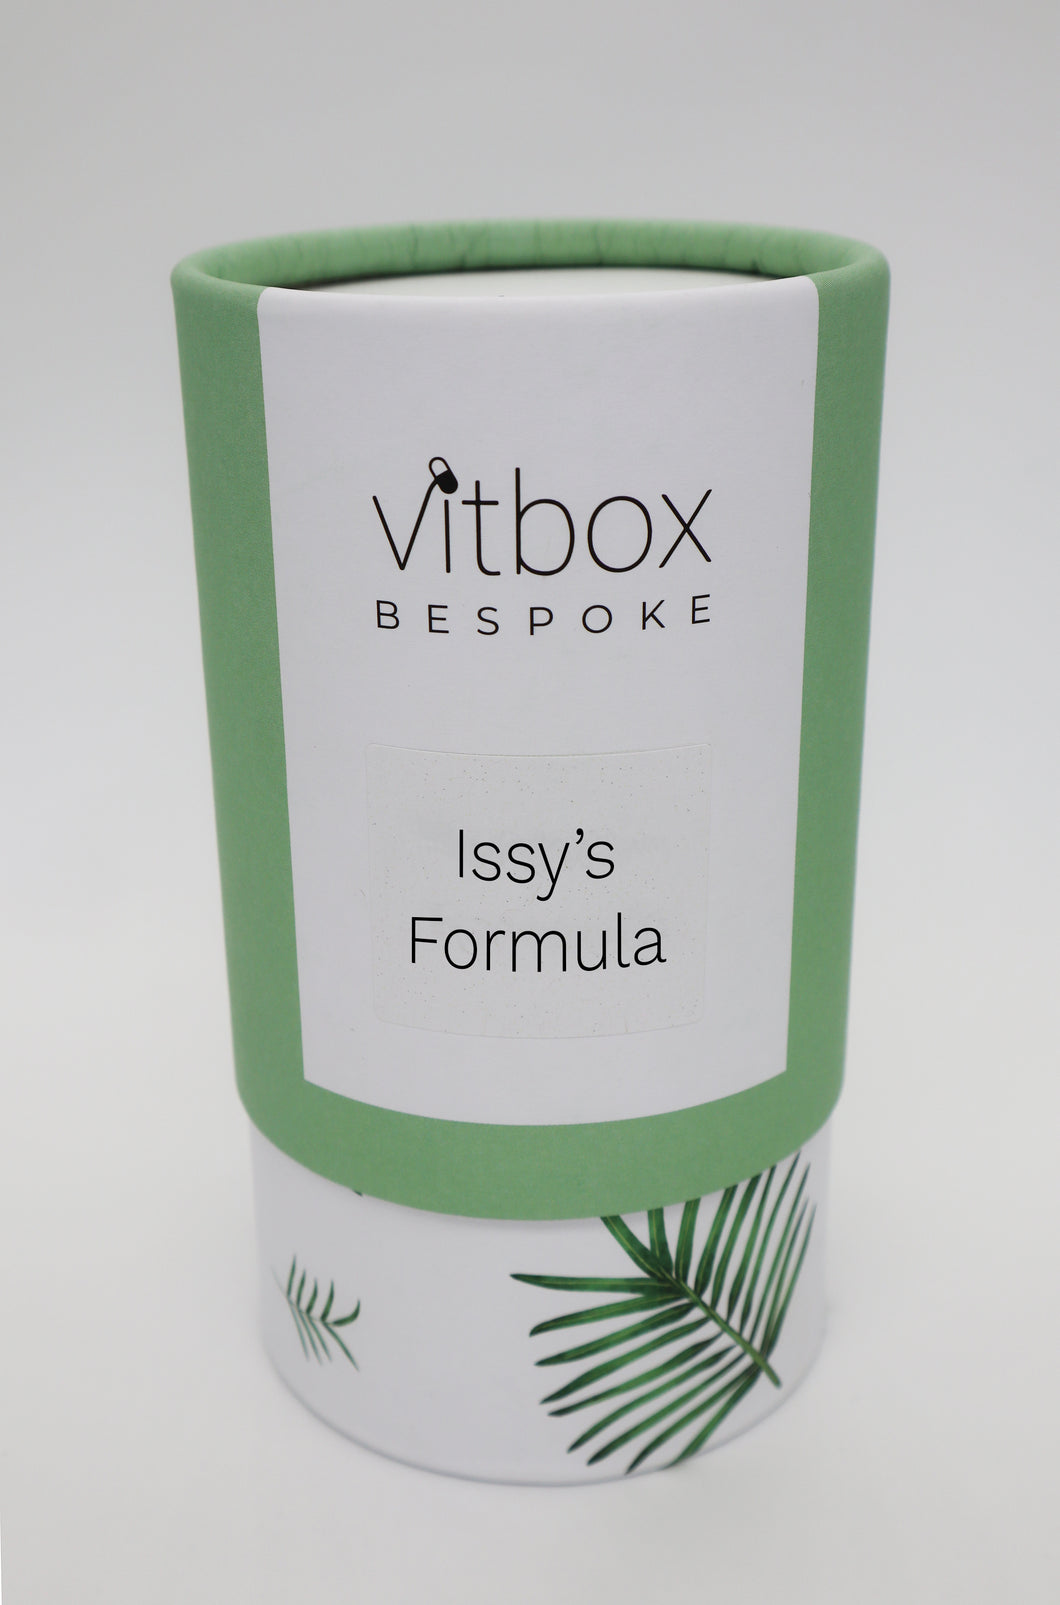 Issy's Vitbox Bespoke